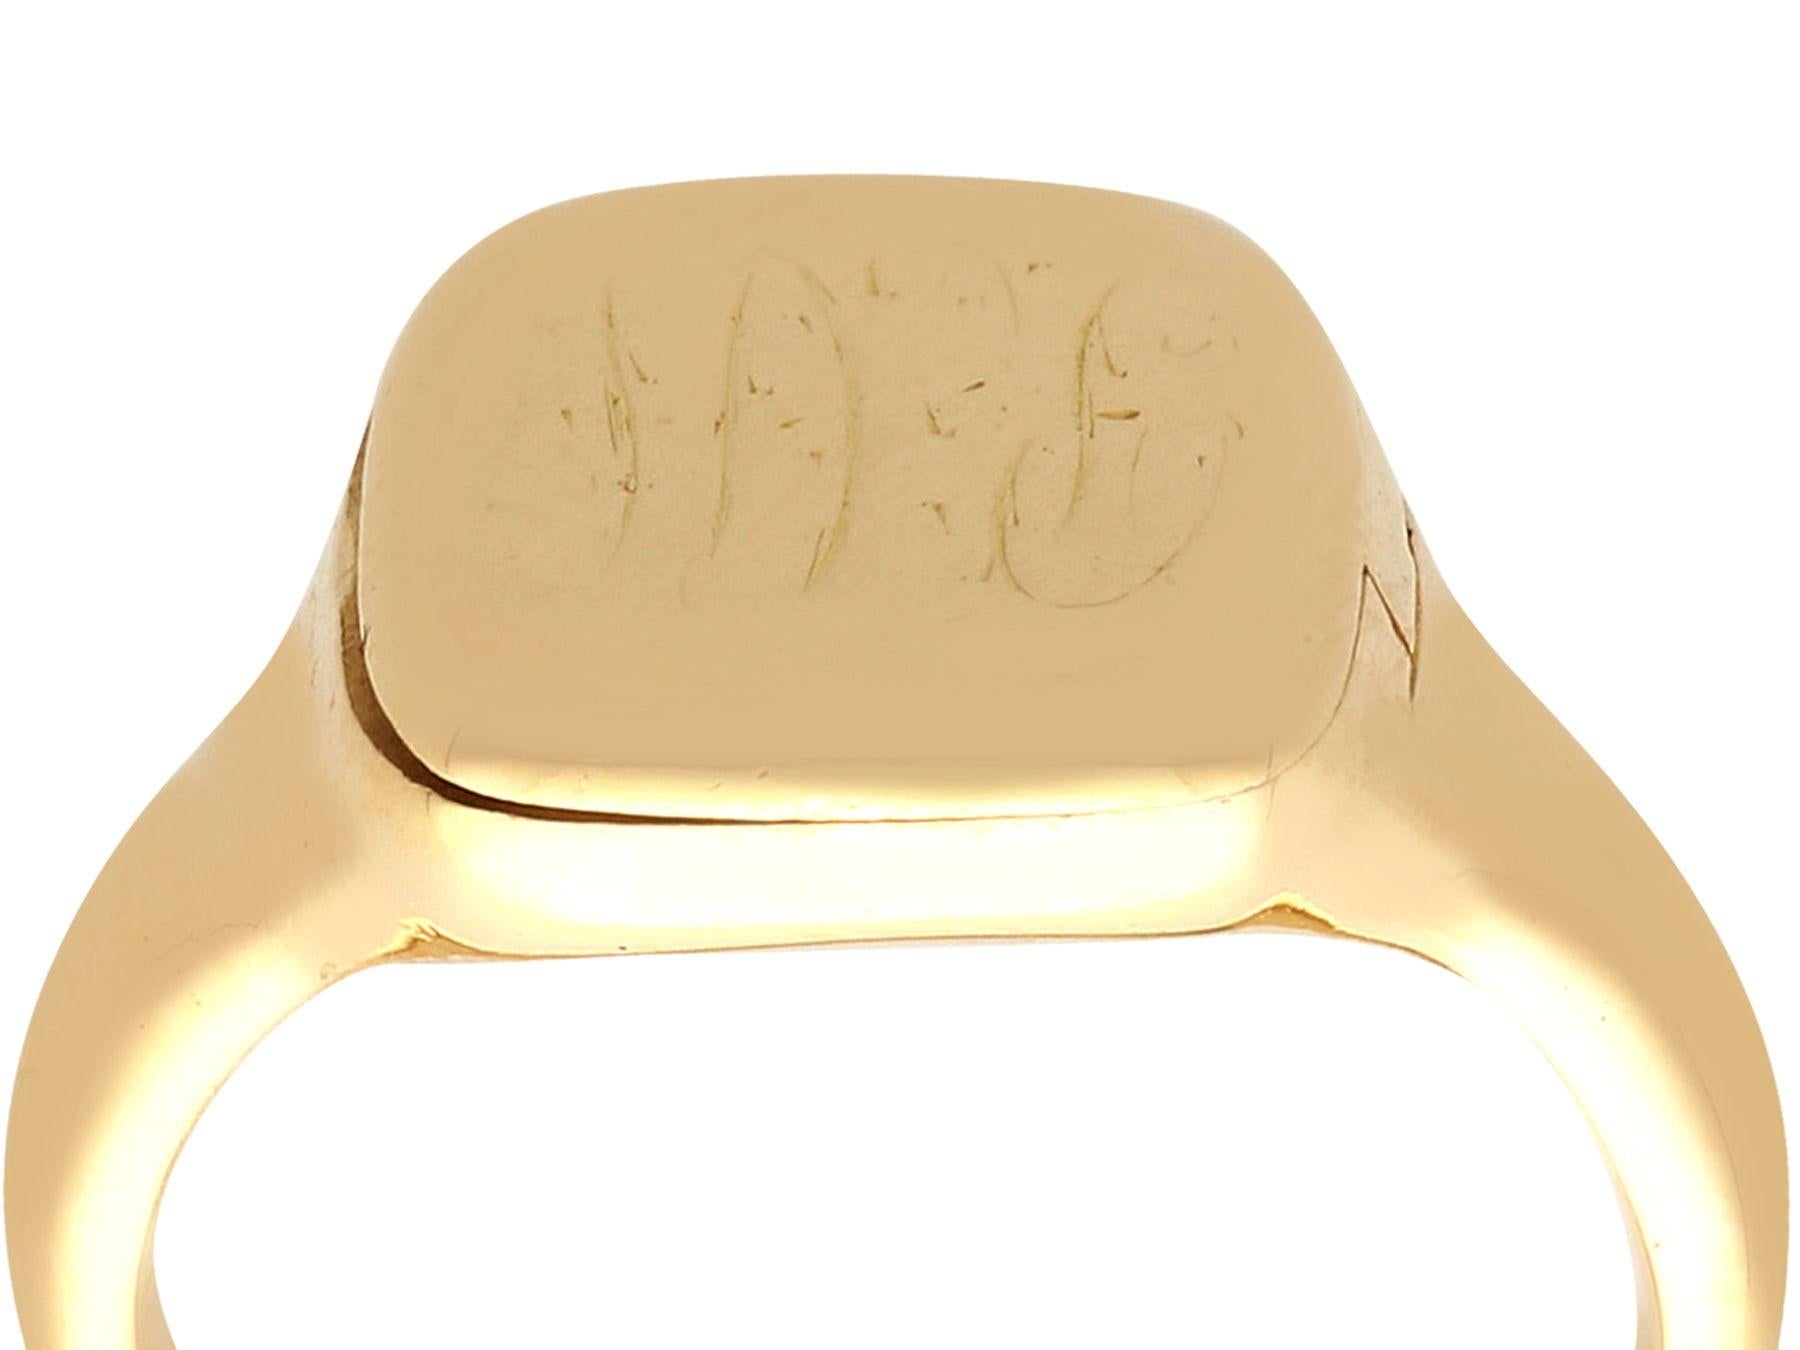 Ein beeindruckender Siegelring aus 18 Karat Gelbgold, verziert mit einem versteckten Emaille-Fach; Teil unserer vielfältigen Sammlungen von antikem Schmuck und Nachlassschmuck.

Dieser feine und beeindruckende Siegelring ist aus 18 Karat Gelbgold